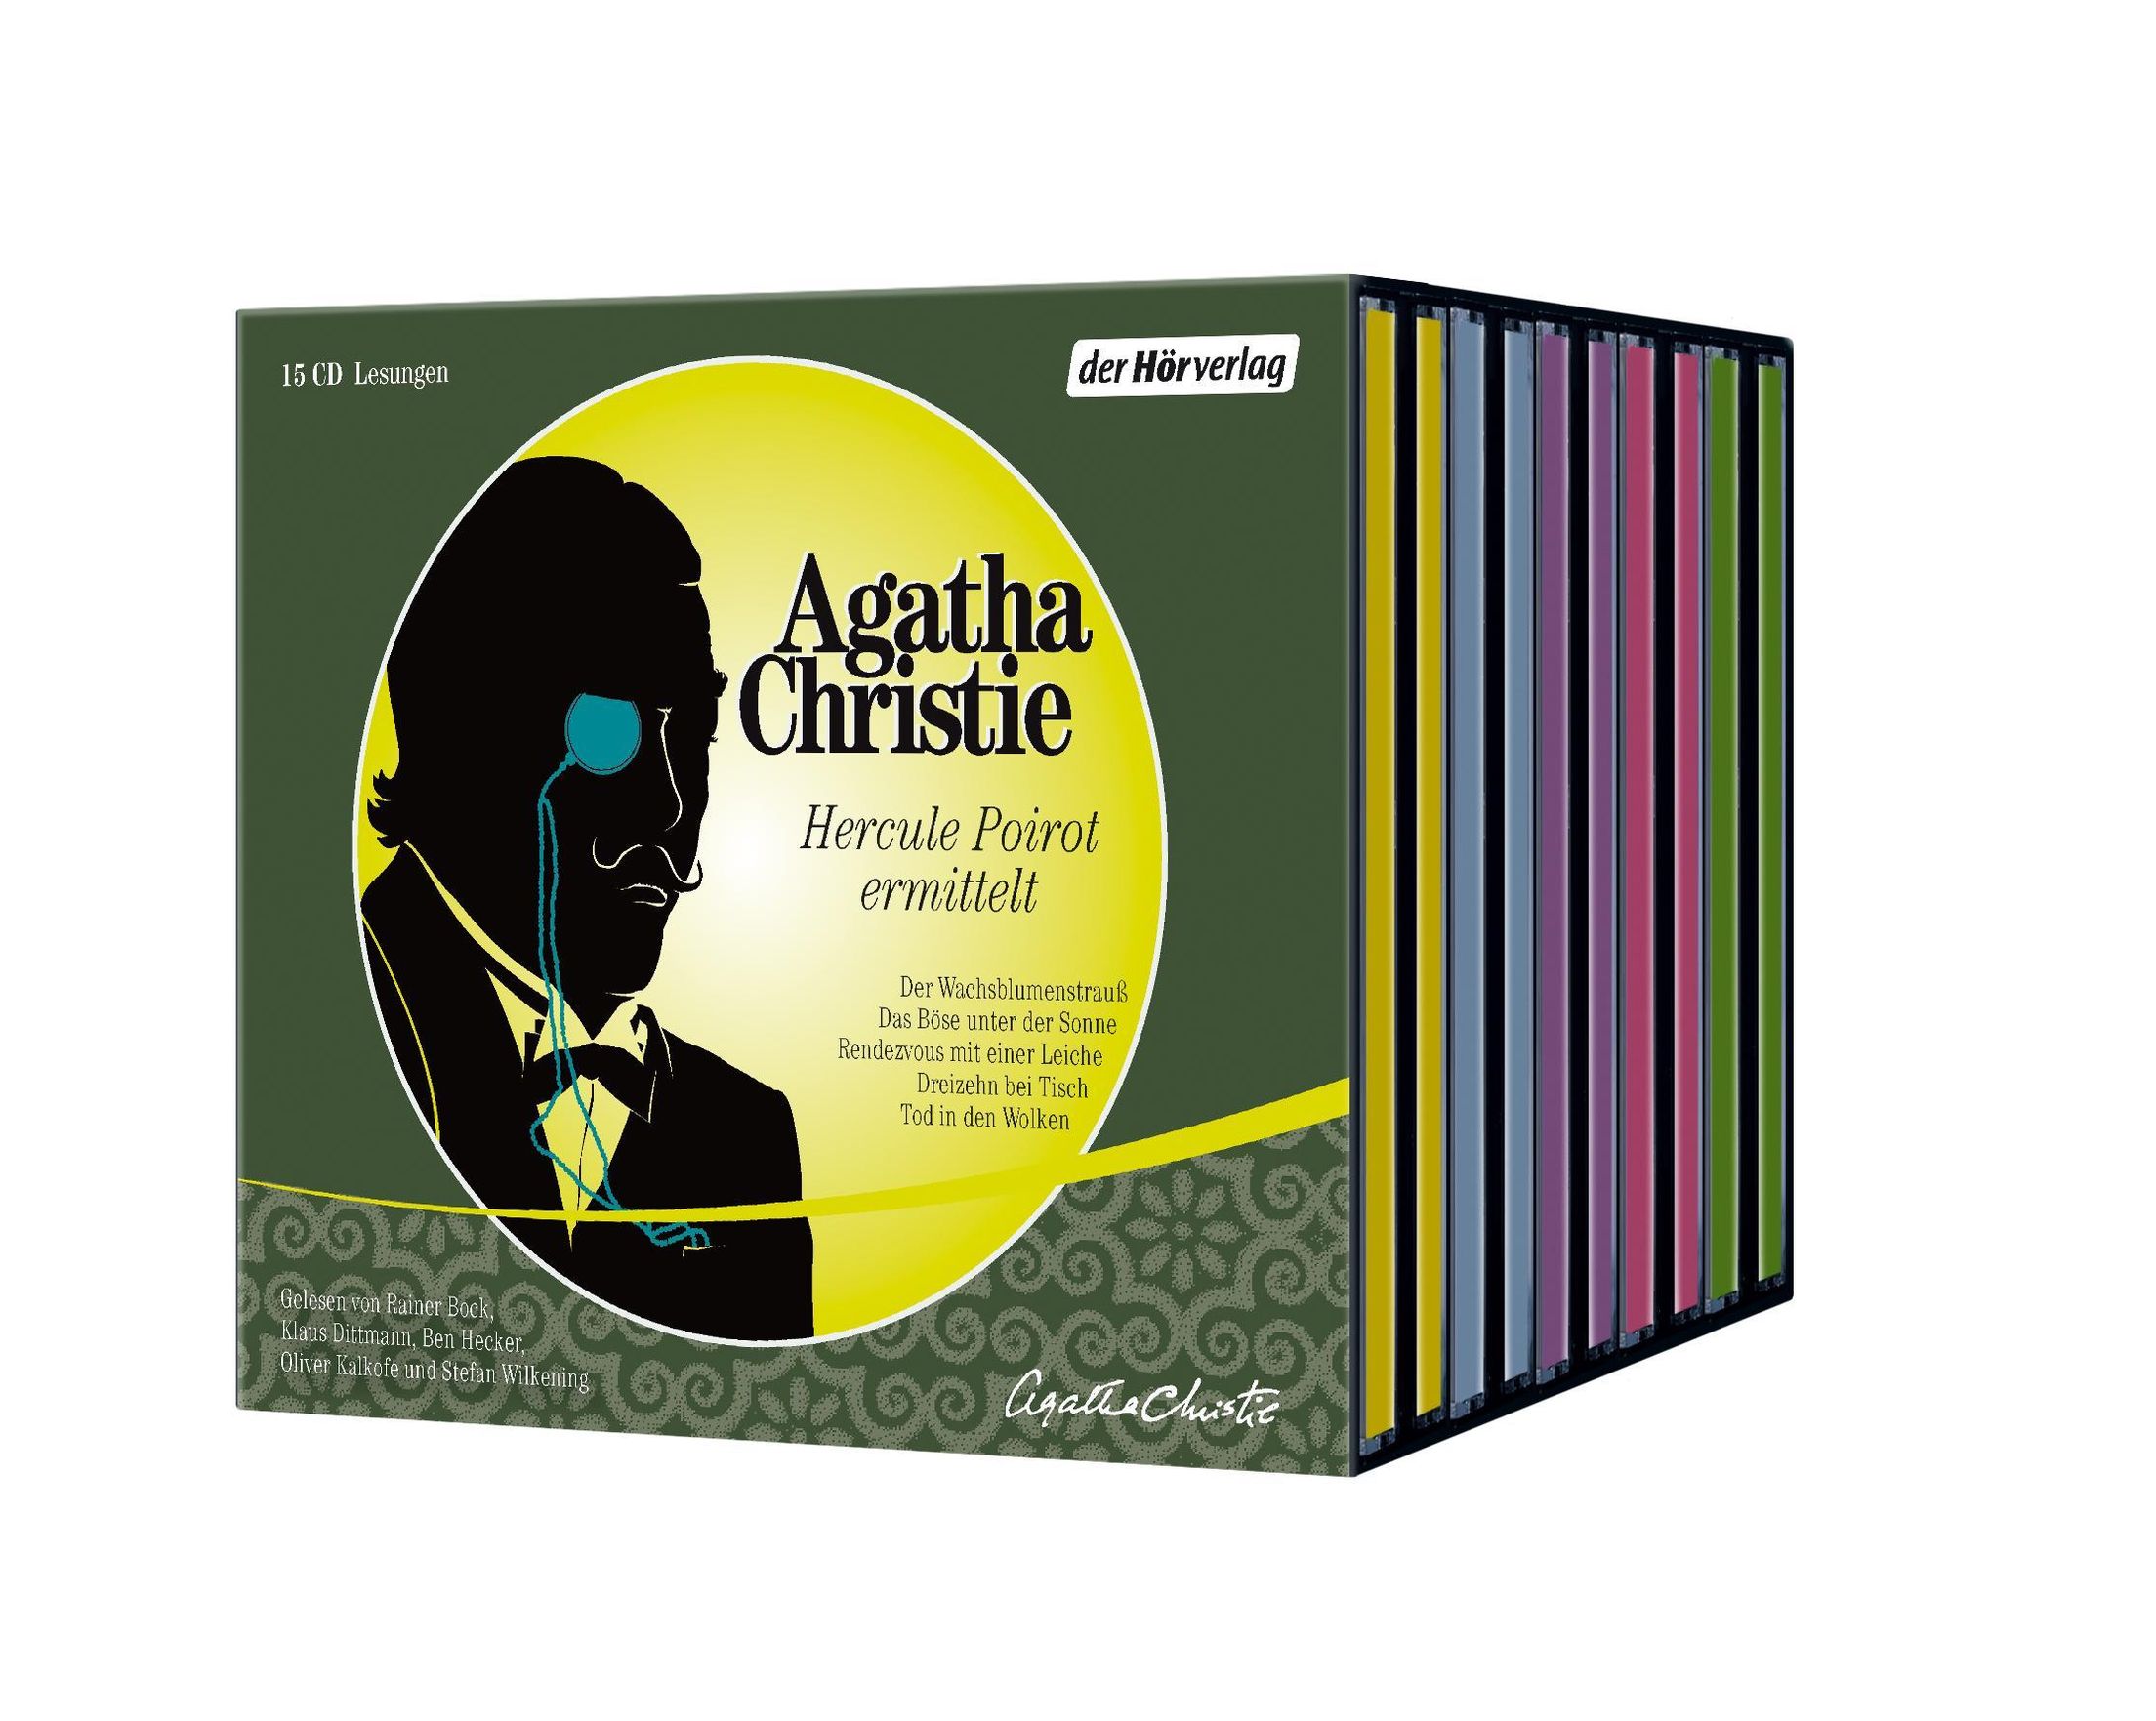 Hercule Poirot ermittelt, 15 CDs Hörbuch günstig bestellen